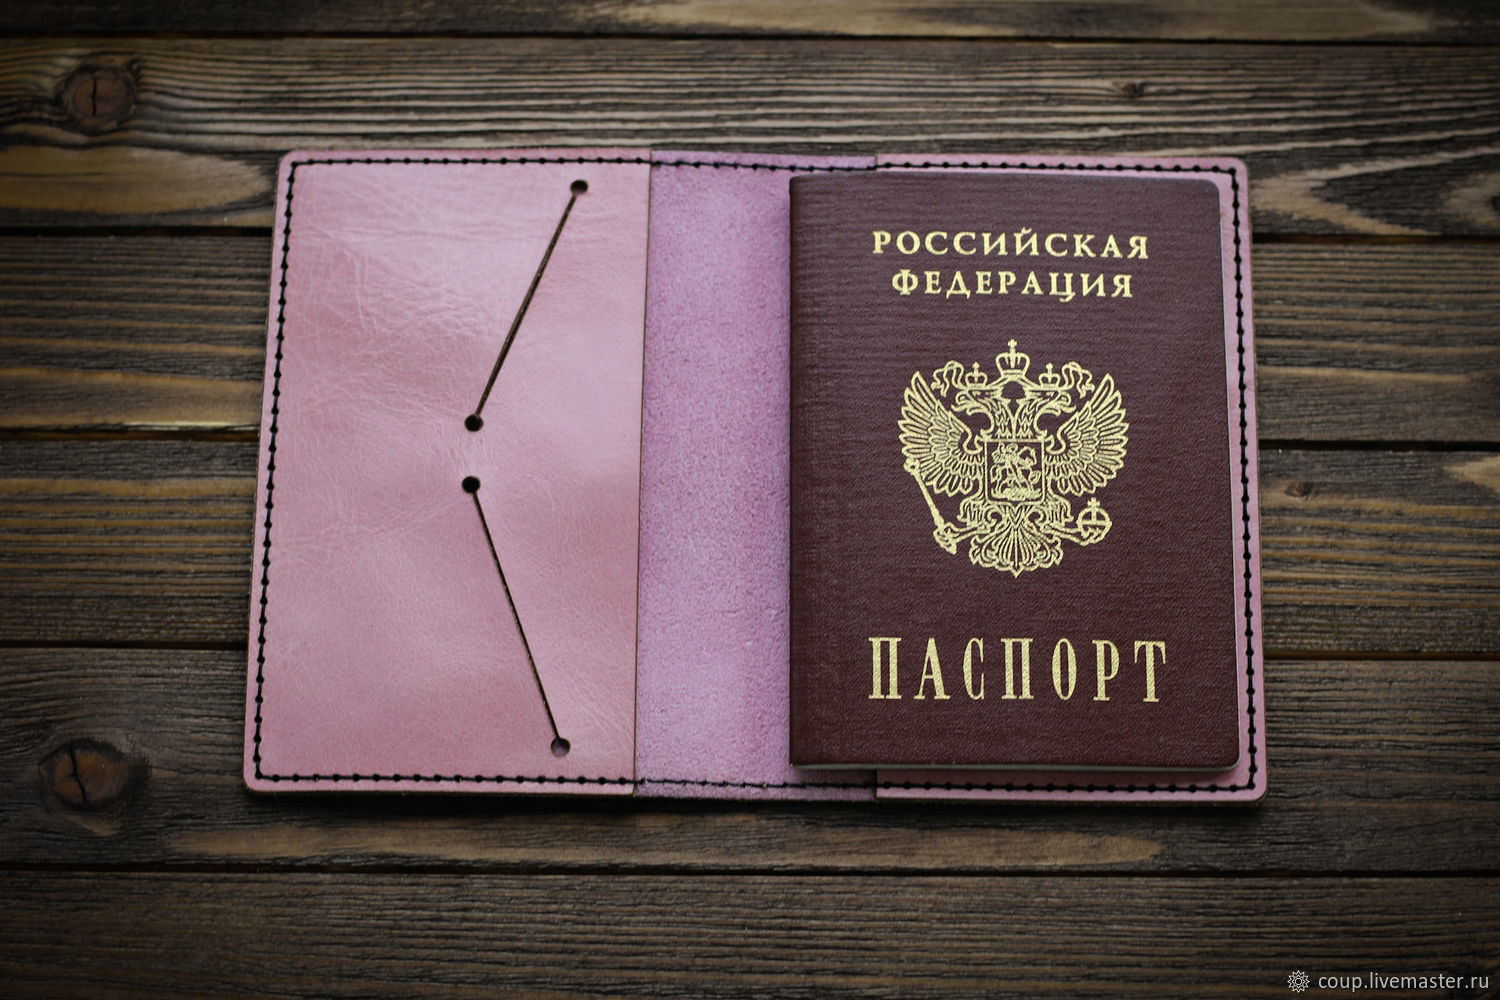 Изготовление обложек для паспорта как идея для бизнеса